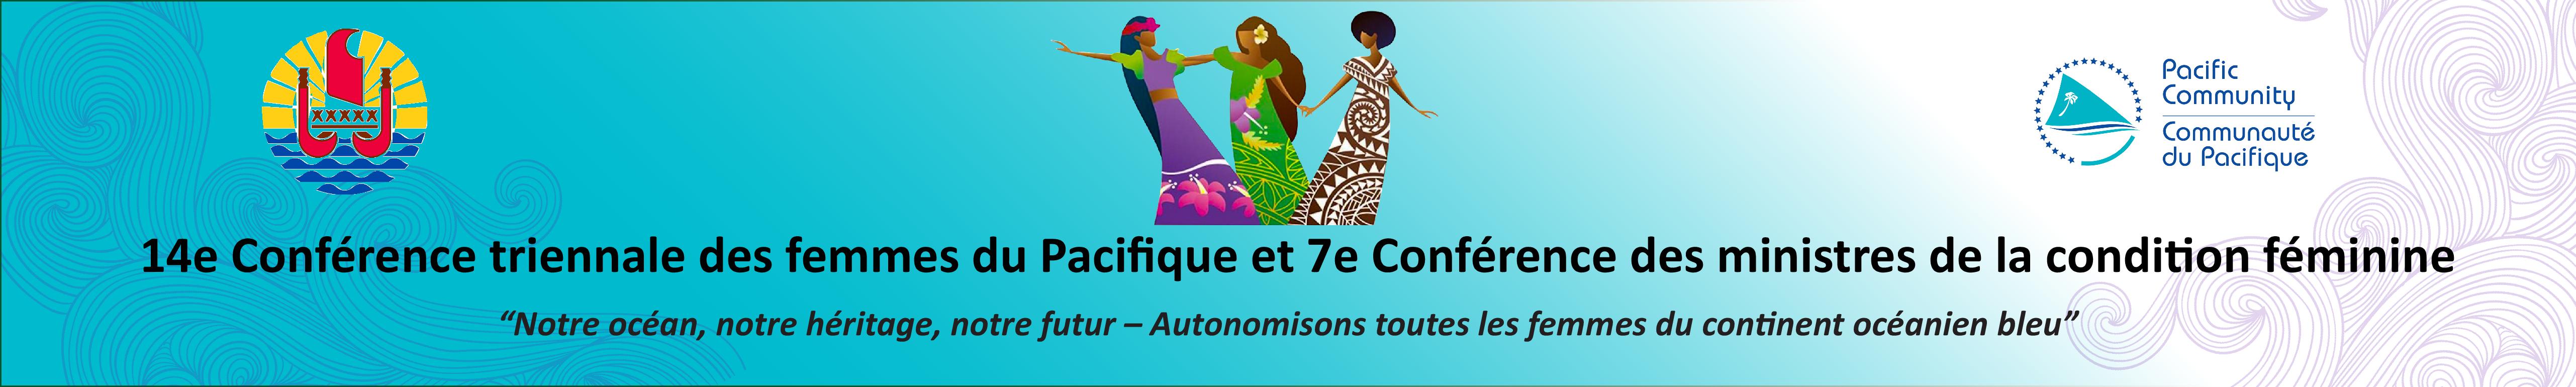 14e Conférence triennale des femmes du Pacifique et 7e Conférence des ministres de la condition féminine